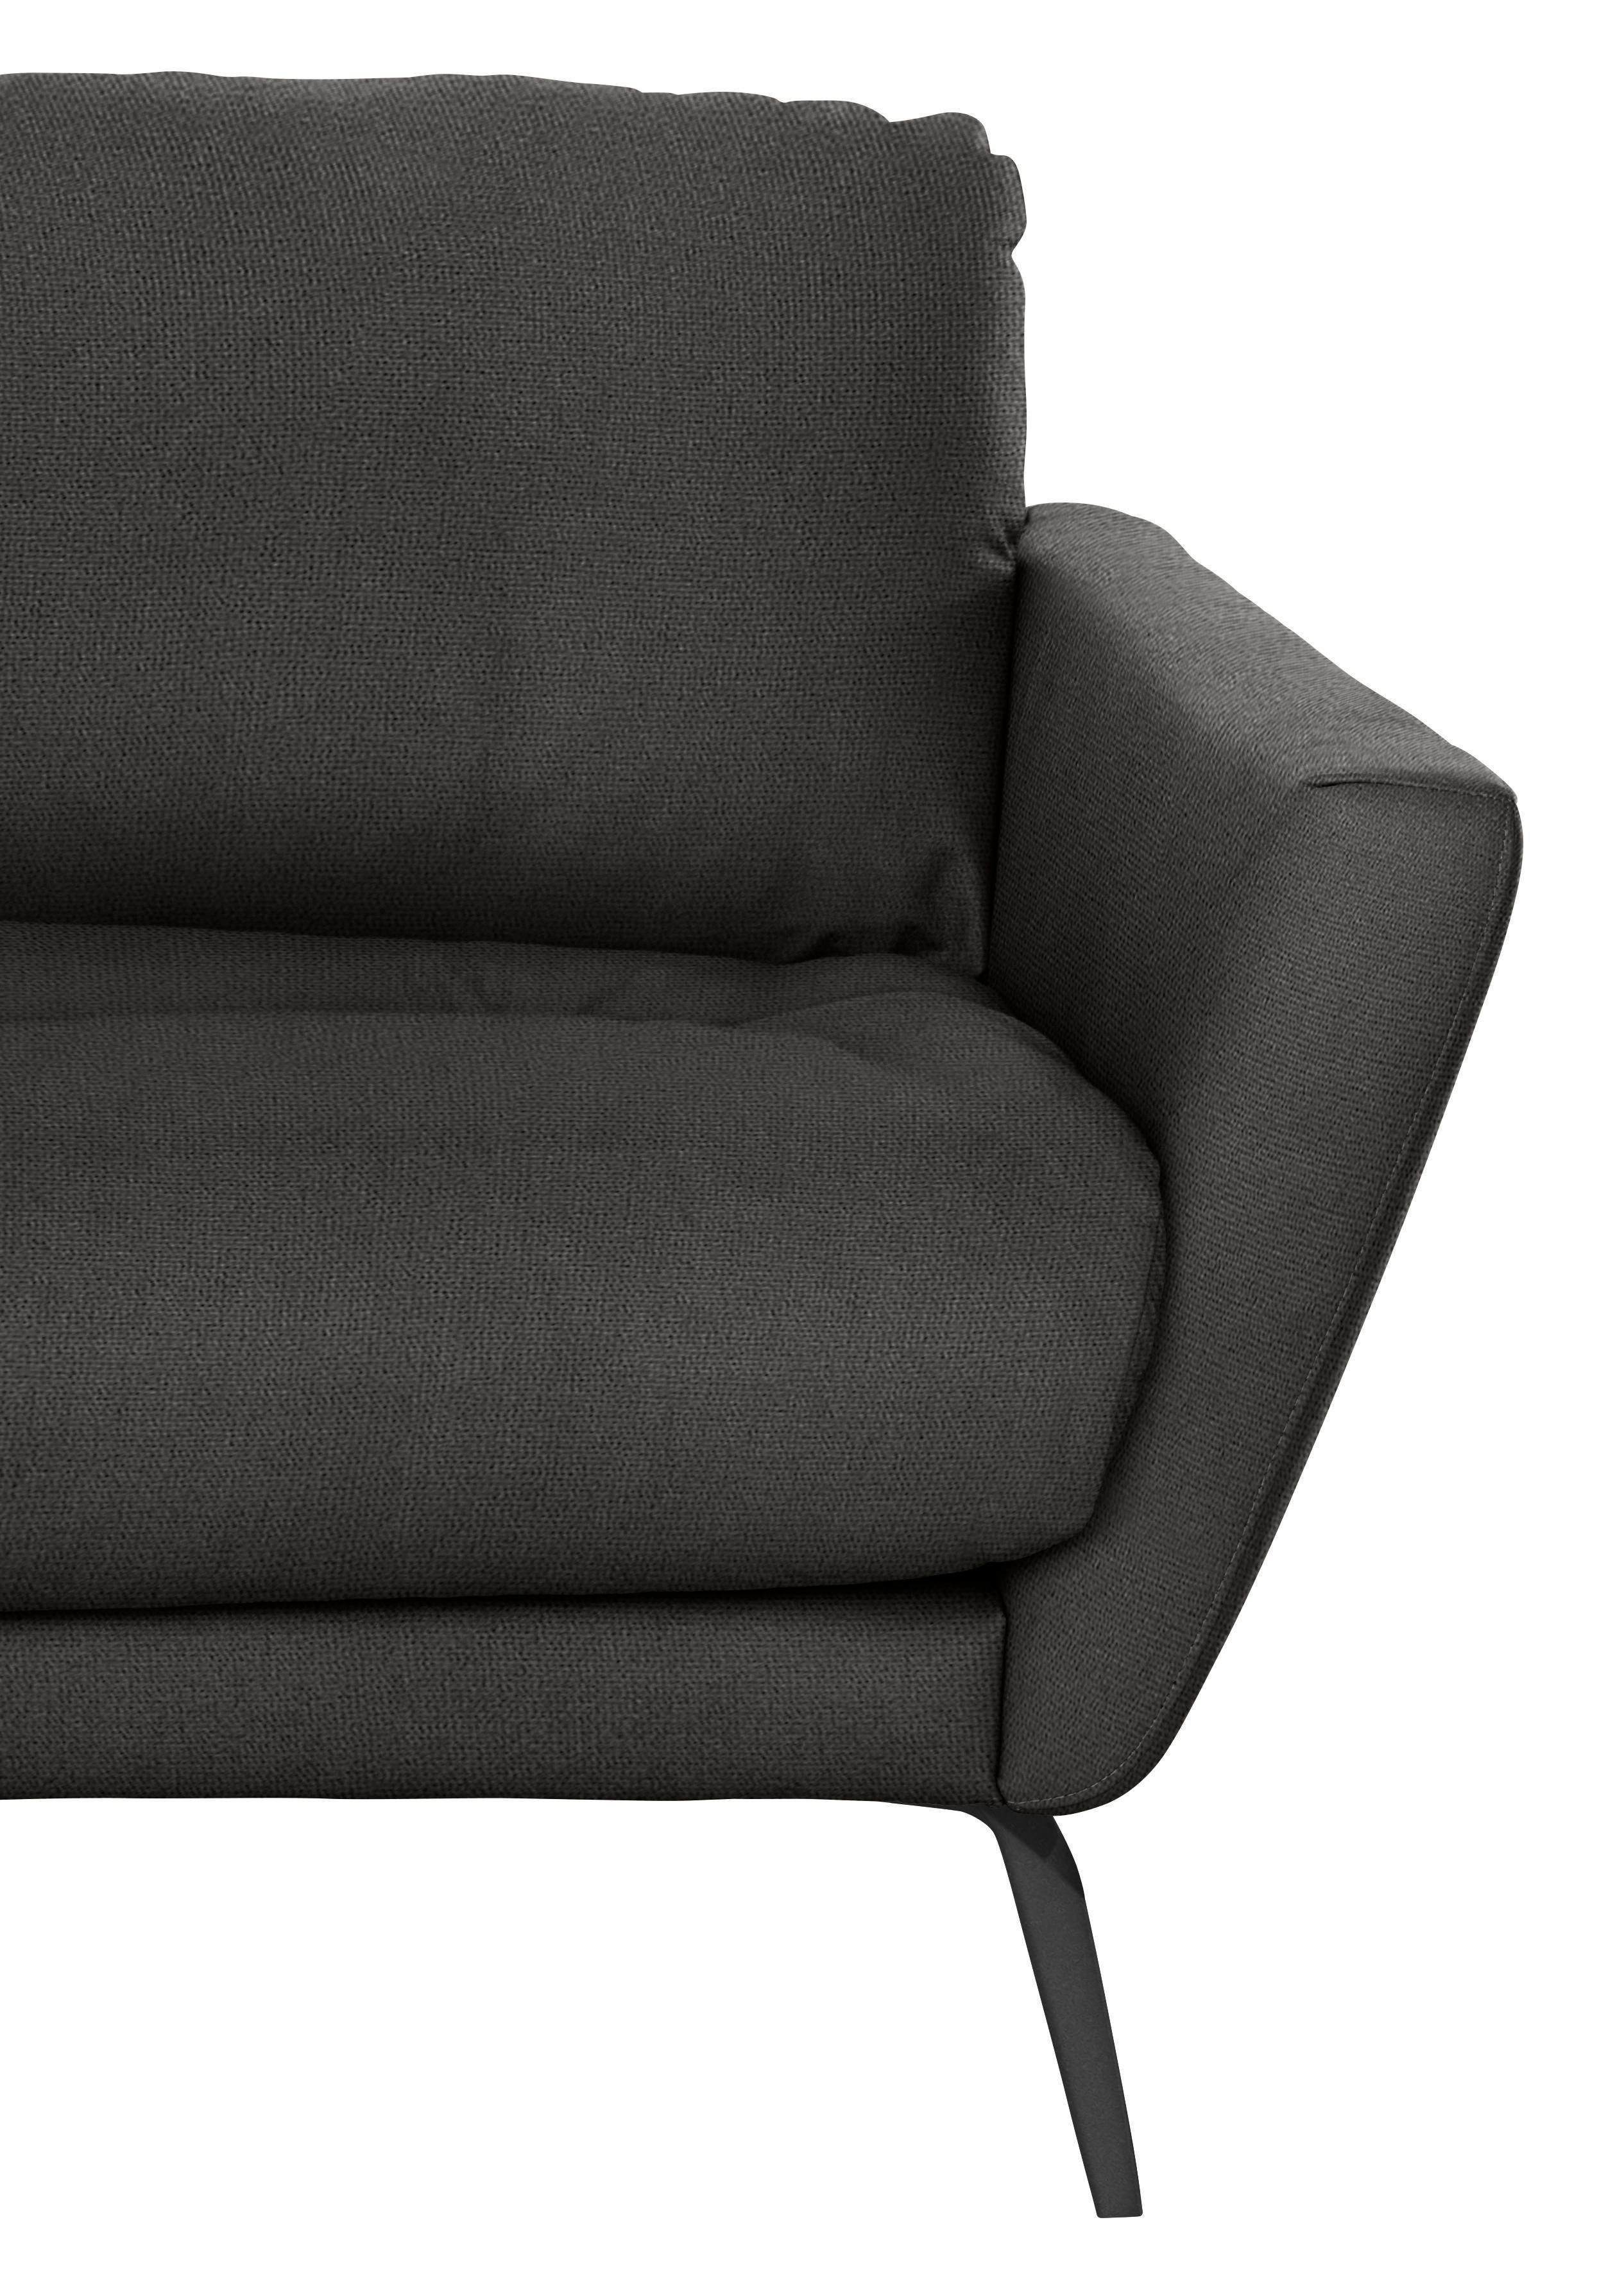 W.SCHILLIG Big-Sofa softy, mit im Sitz, schwarz dekorativer Heftung Füße pulverbeschichtet